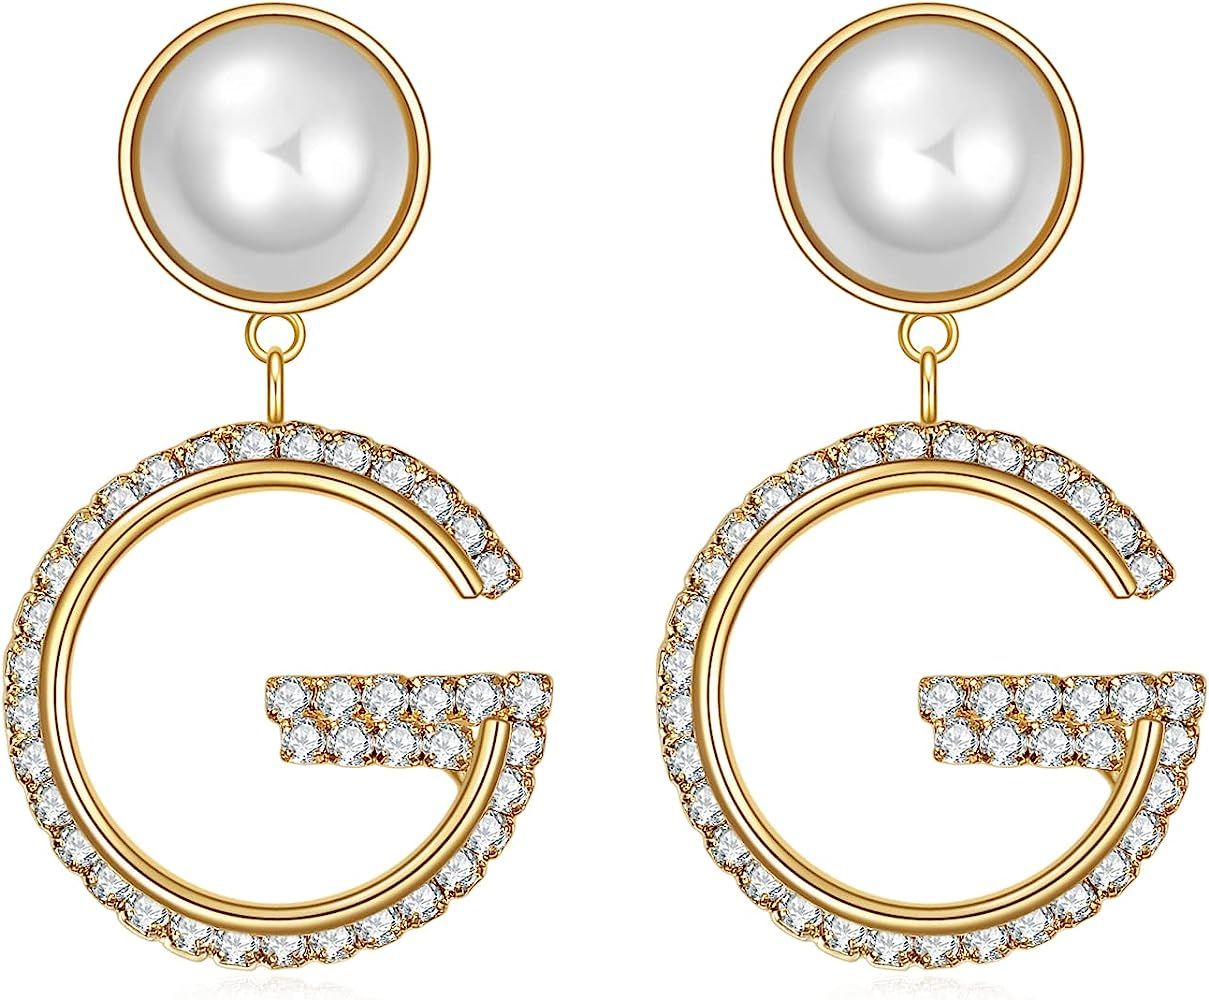 G Initial Letter Earrings - Pearl Drop Earrings Dangle Sterling Silver Hypoallergenic Earrings Cu... | Amazon (US)